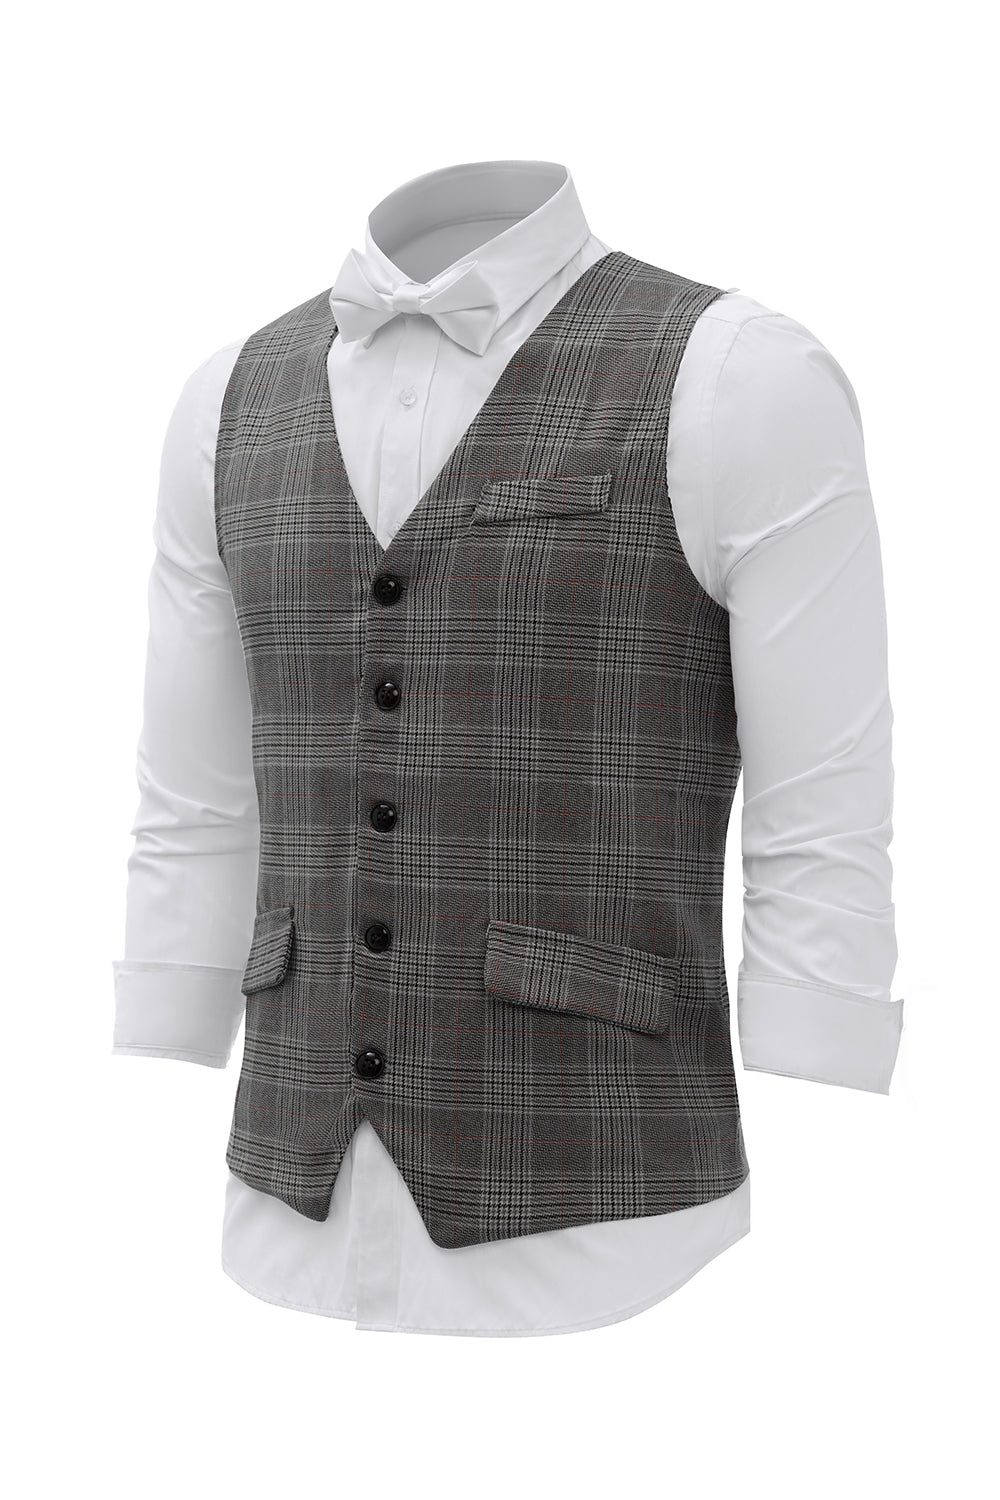 Grey Plaid Men's Vest with 5 Pieces Accessories Set